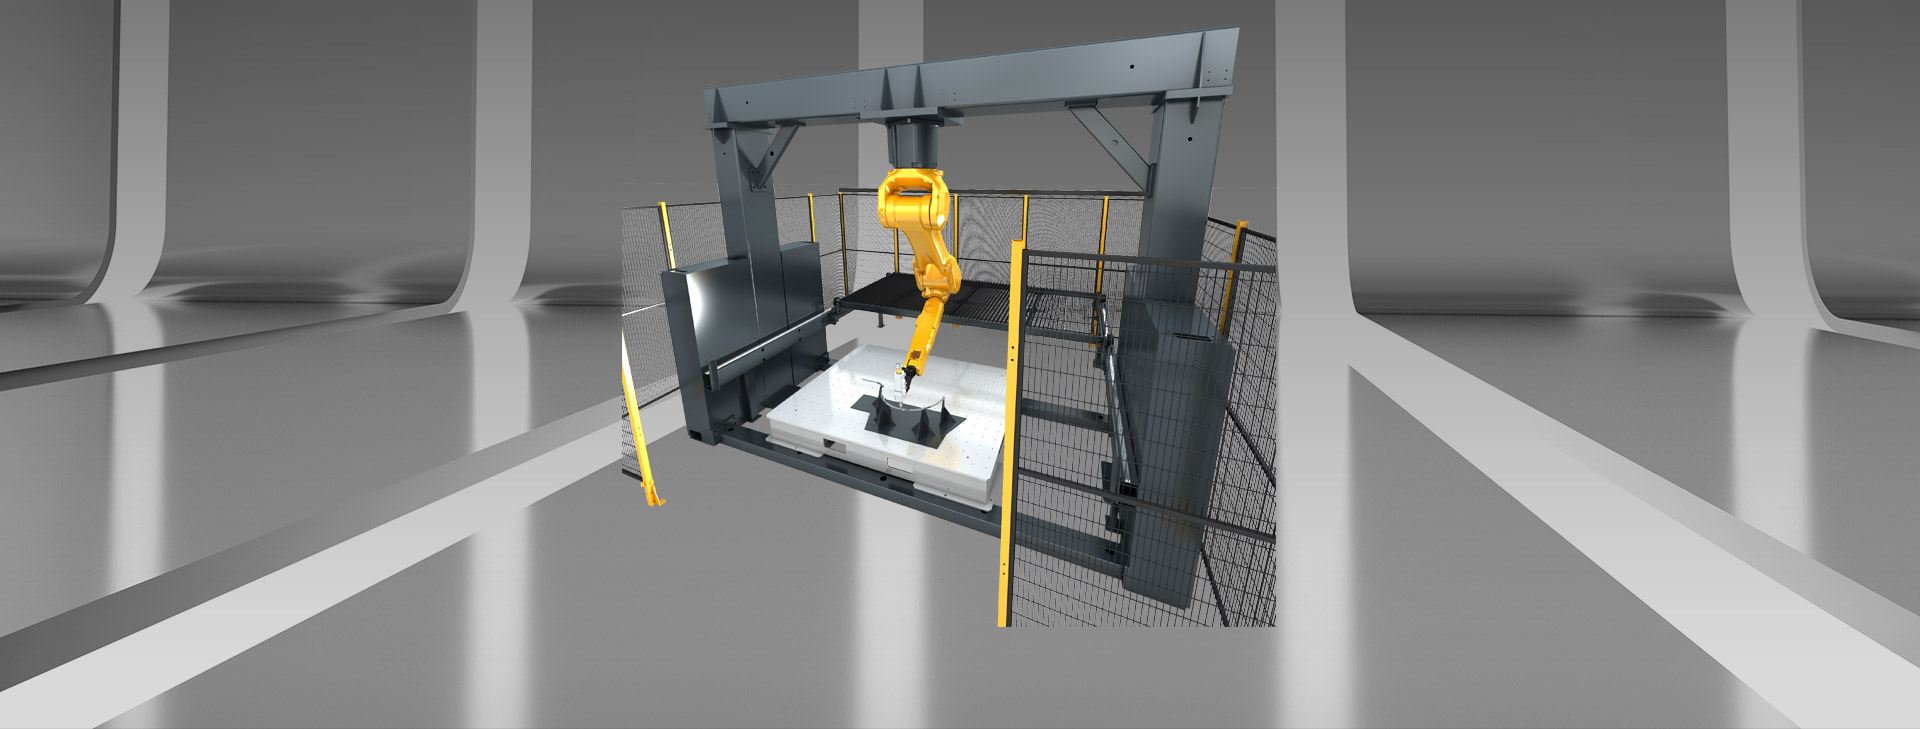 3D Roboter Laser Schneidemaschine mit Gantry Struktur